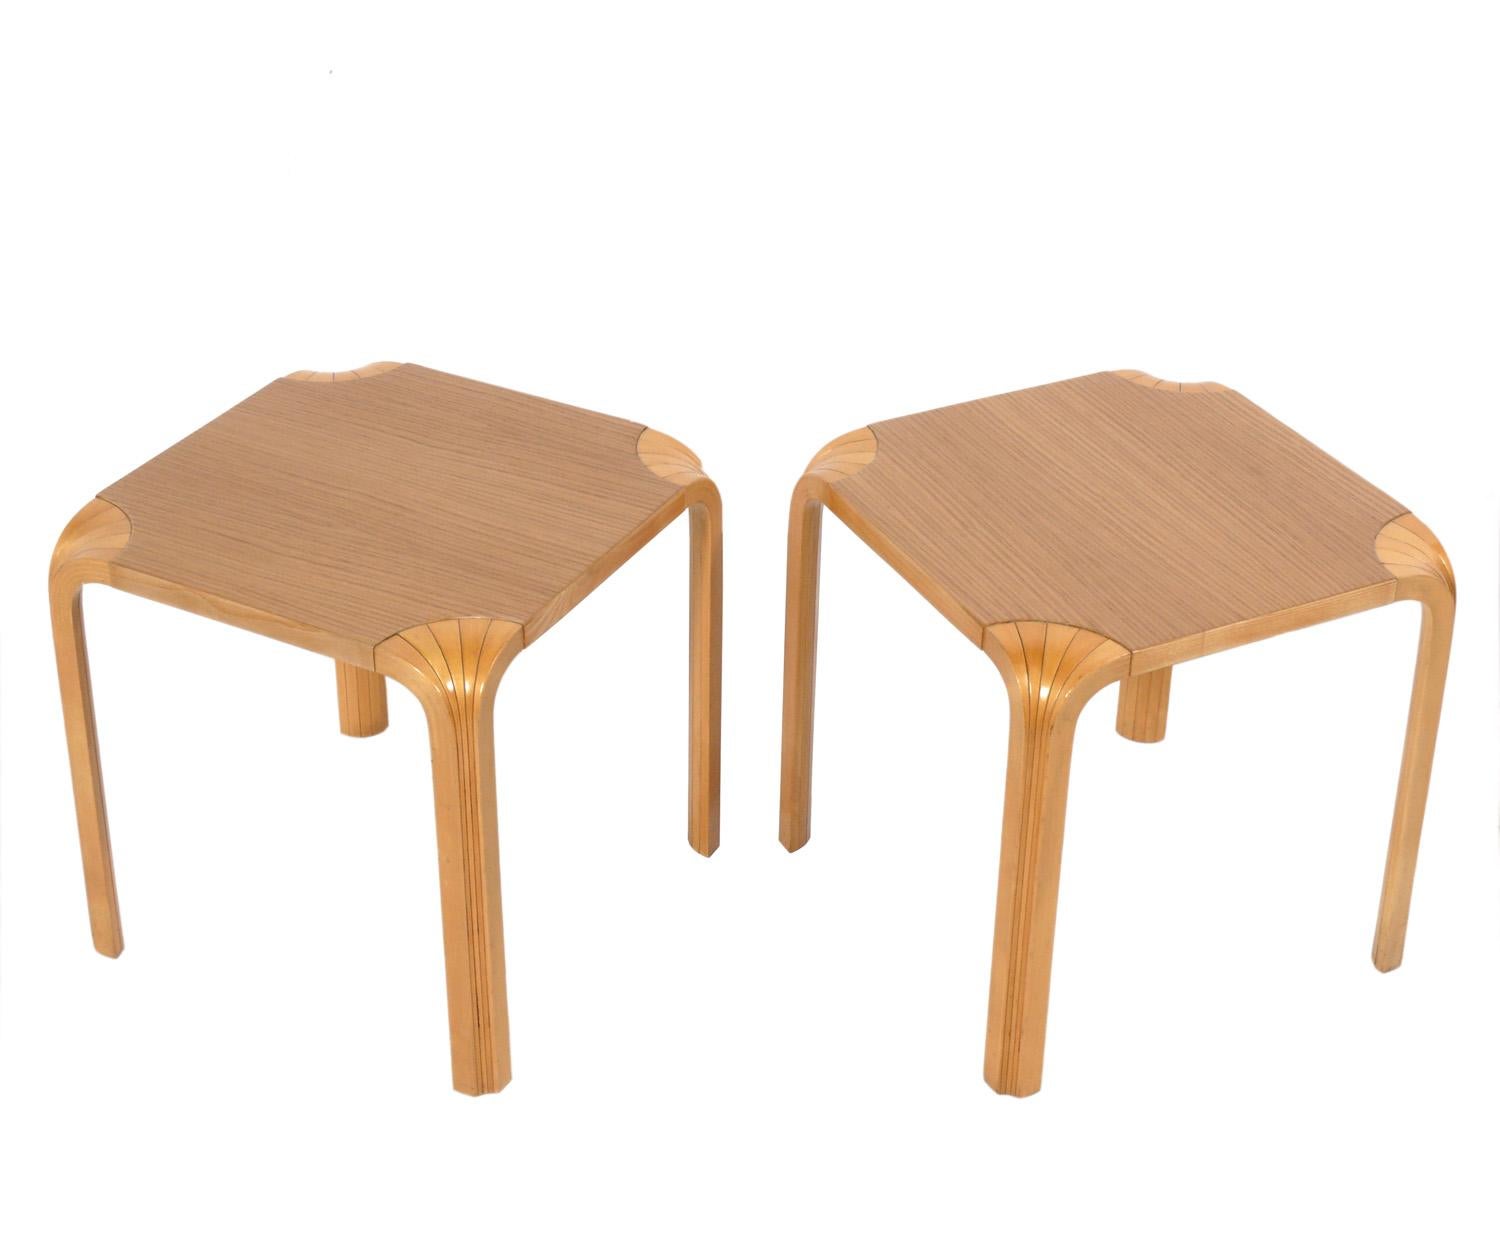 Zwei Tische mit fächerförmigen Beinen, entworfen von Alvar Aalto für Artek, Finnland, um 1980. Sie haben eine vielseitige Größe und können als Beistelltisch oder Nachttisch verwendet werden. Der unten angegebene Preis bezieht sich auf ein Paar